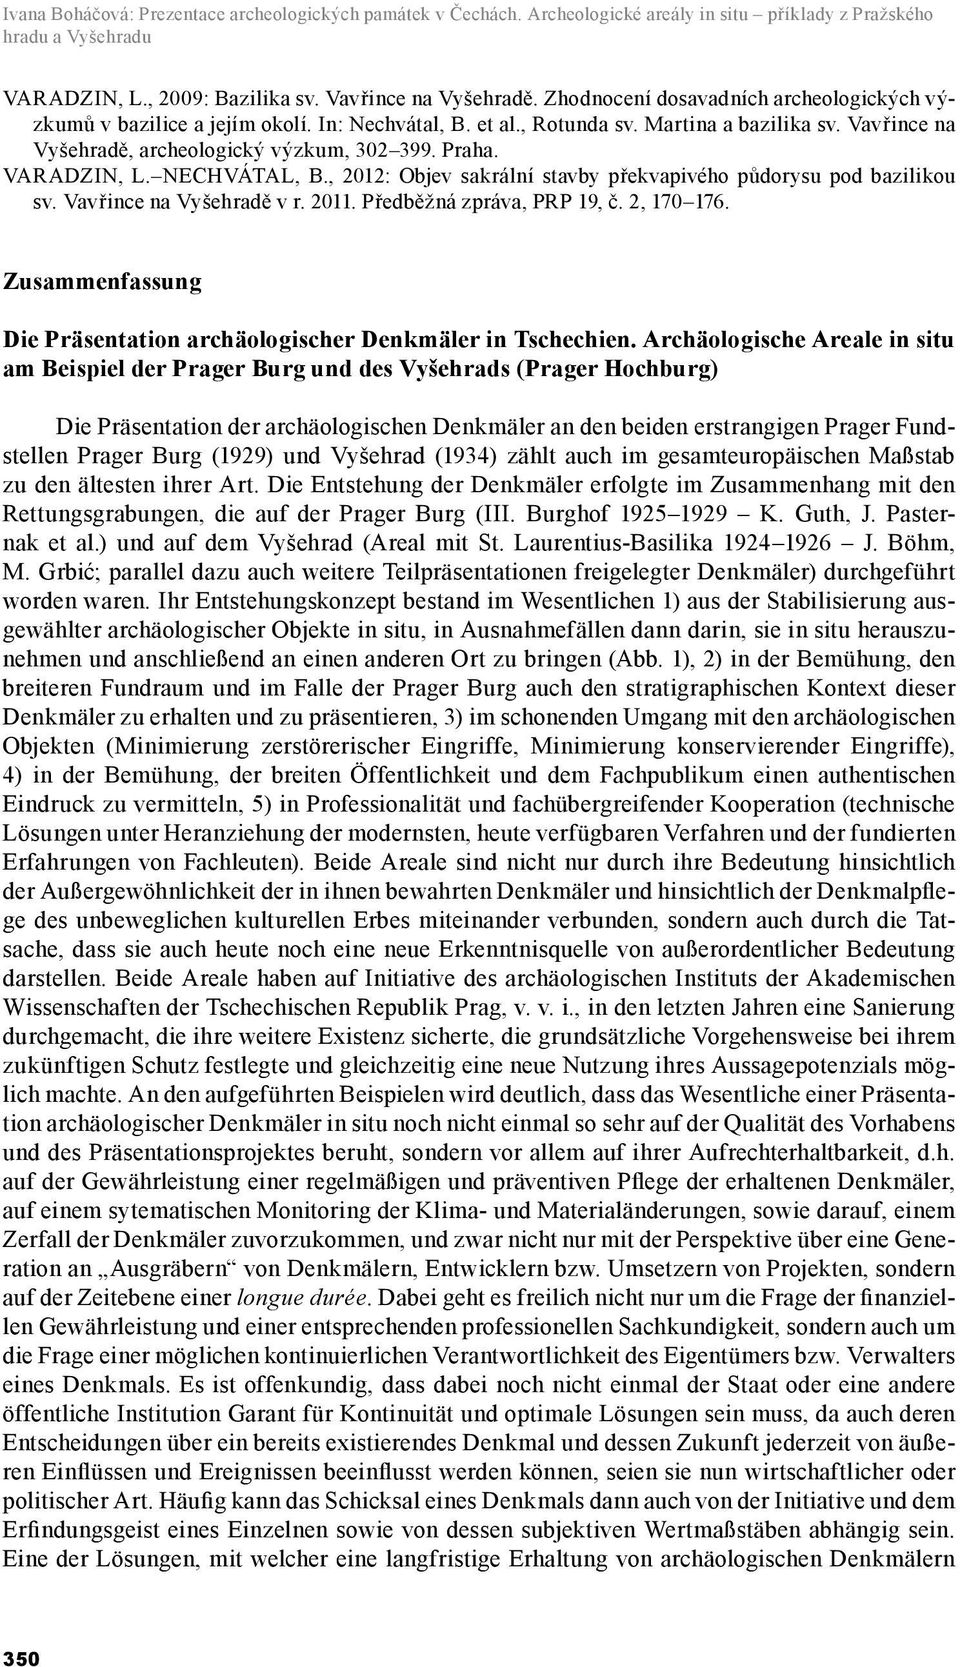 VARADZIN, L. NECHVÁTAL, B., 2012: Objev sakrální stavby překvapivého půdorysu pod bazilikou sv. Vavřince na Vyšehradě v r. 2011. Předběžná zpráva, PRP 19, č. 2, 170 176.